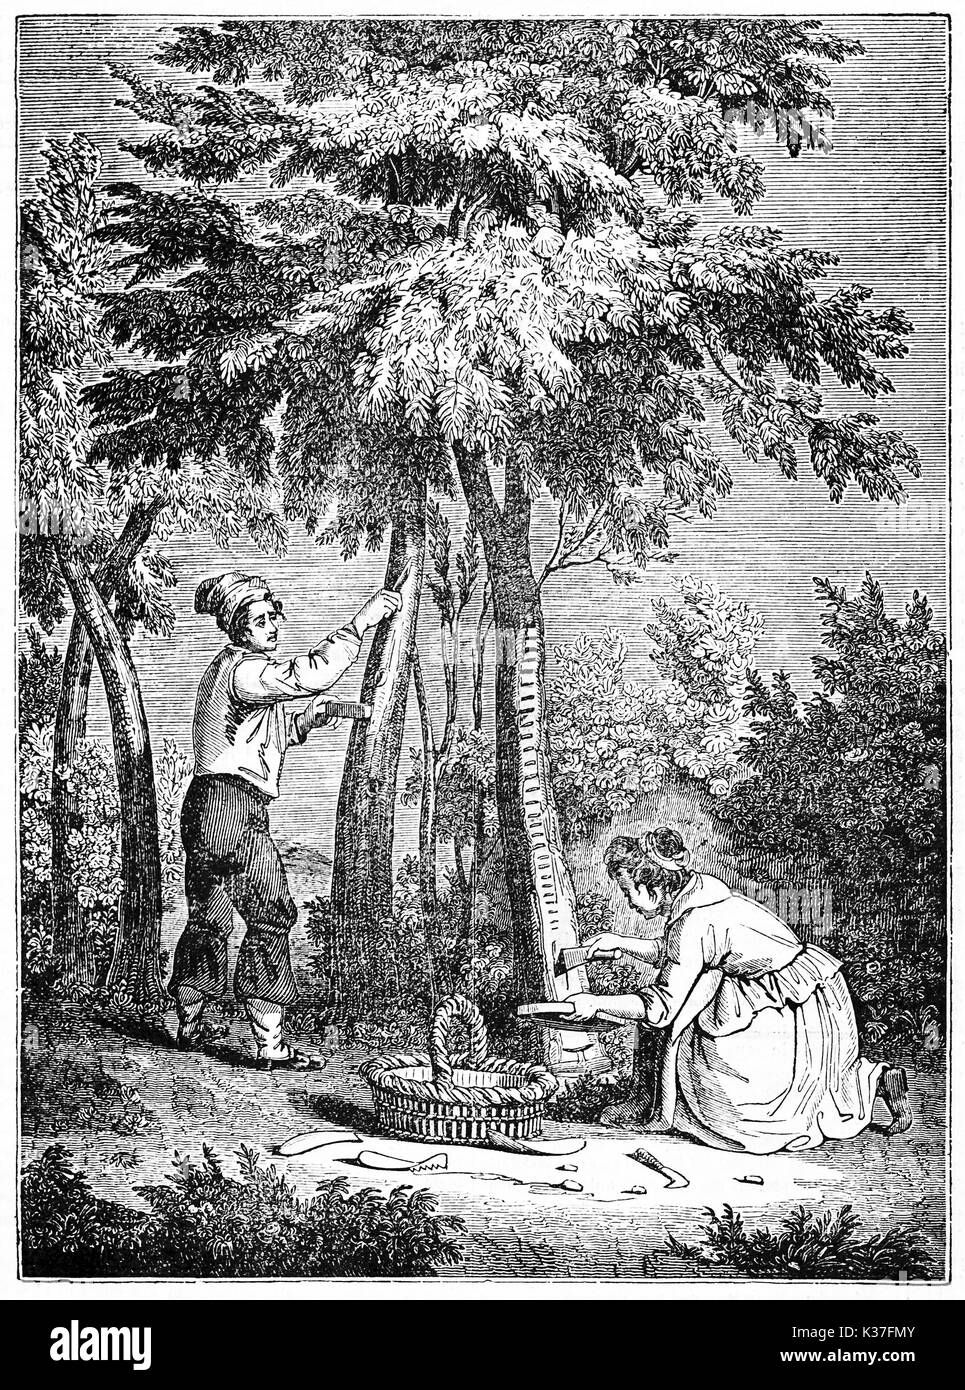 Fraxinus incisione e la manna per la raccolta per due persone medievale. Vecchia illustrazione di autore non identificato pubblicato il Magasin pittoresco Parigi 1834 Foto Stock